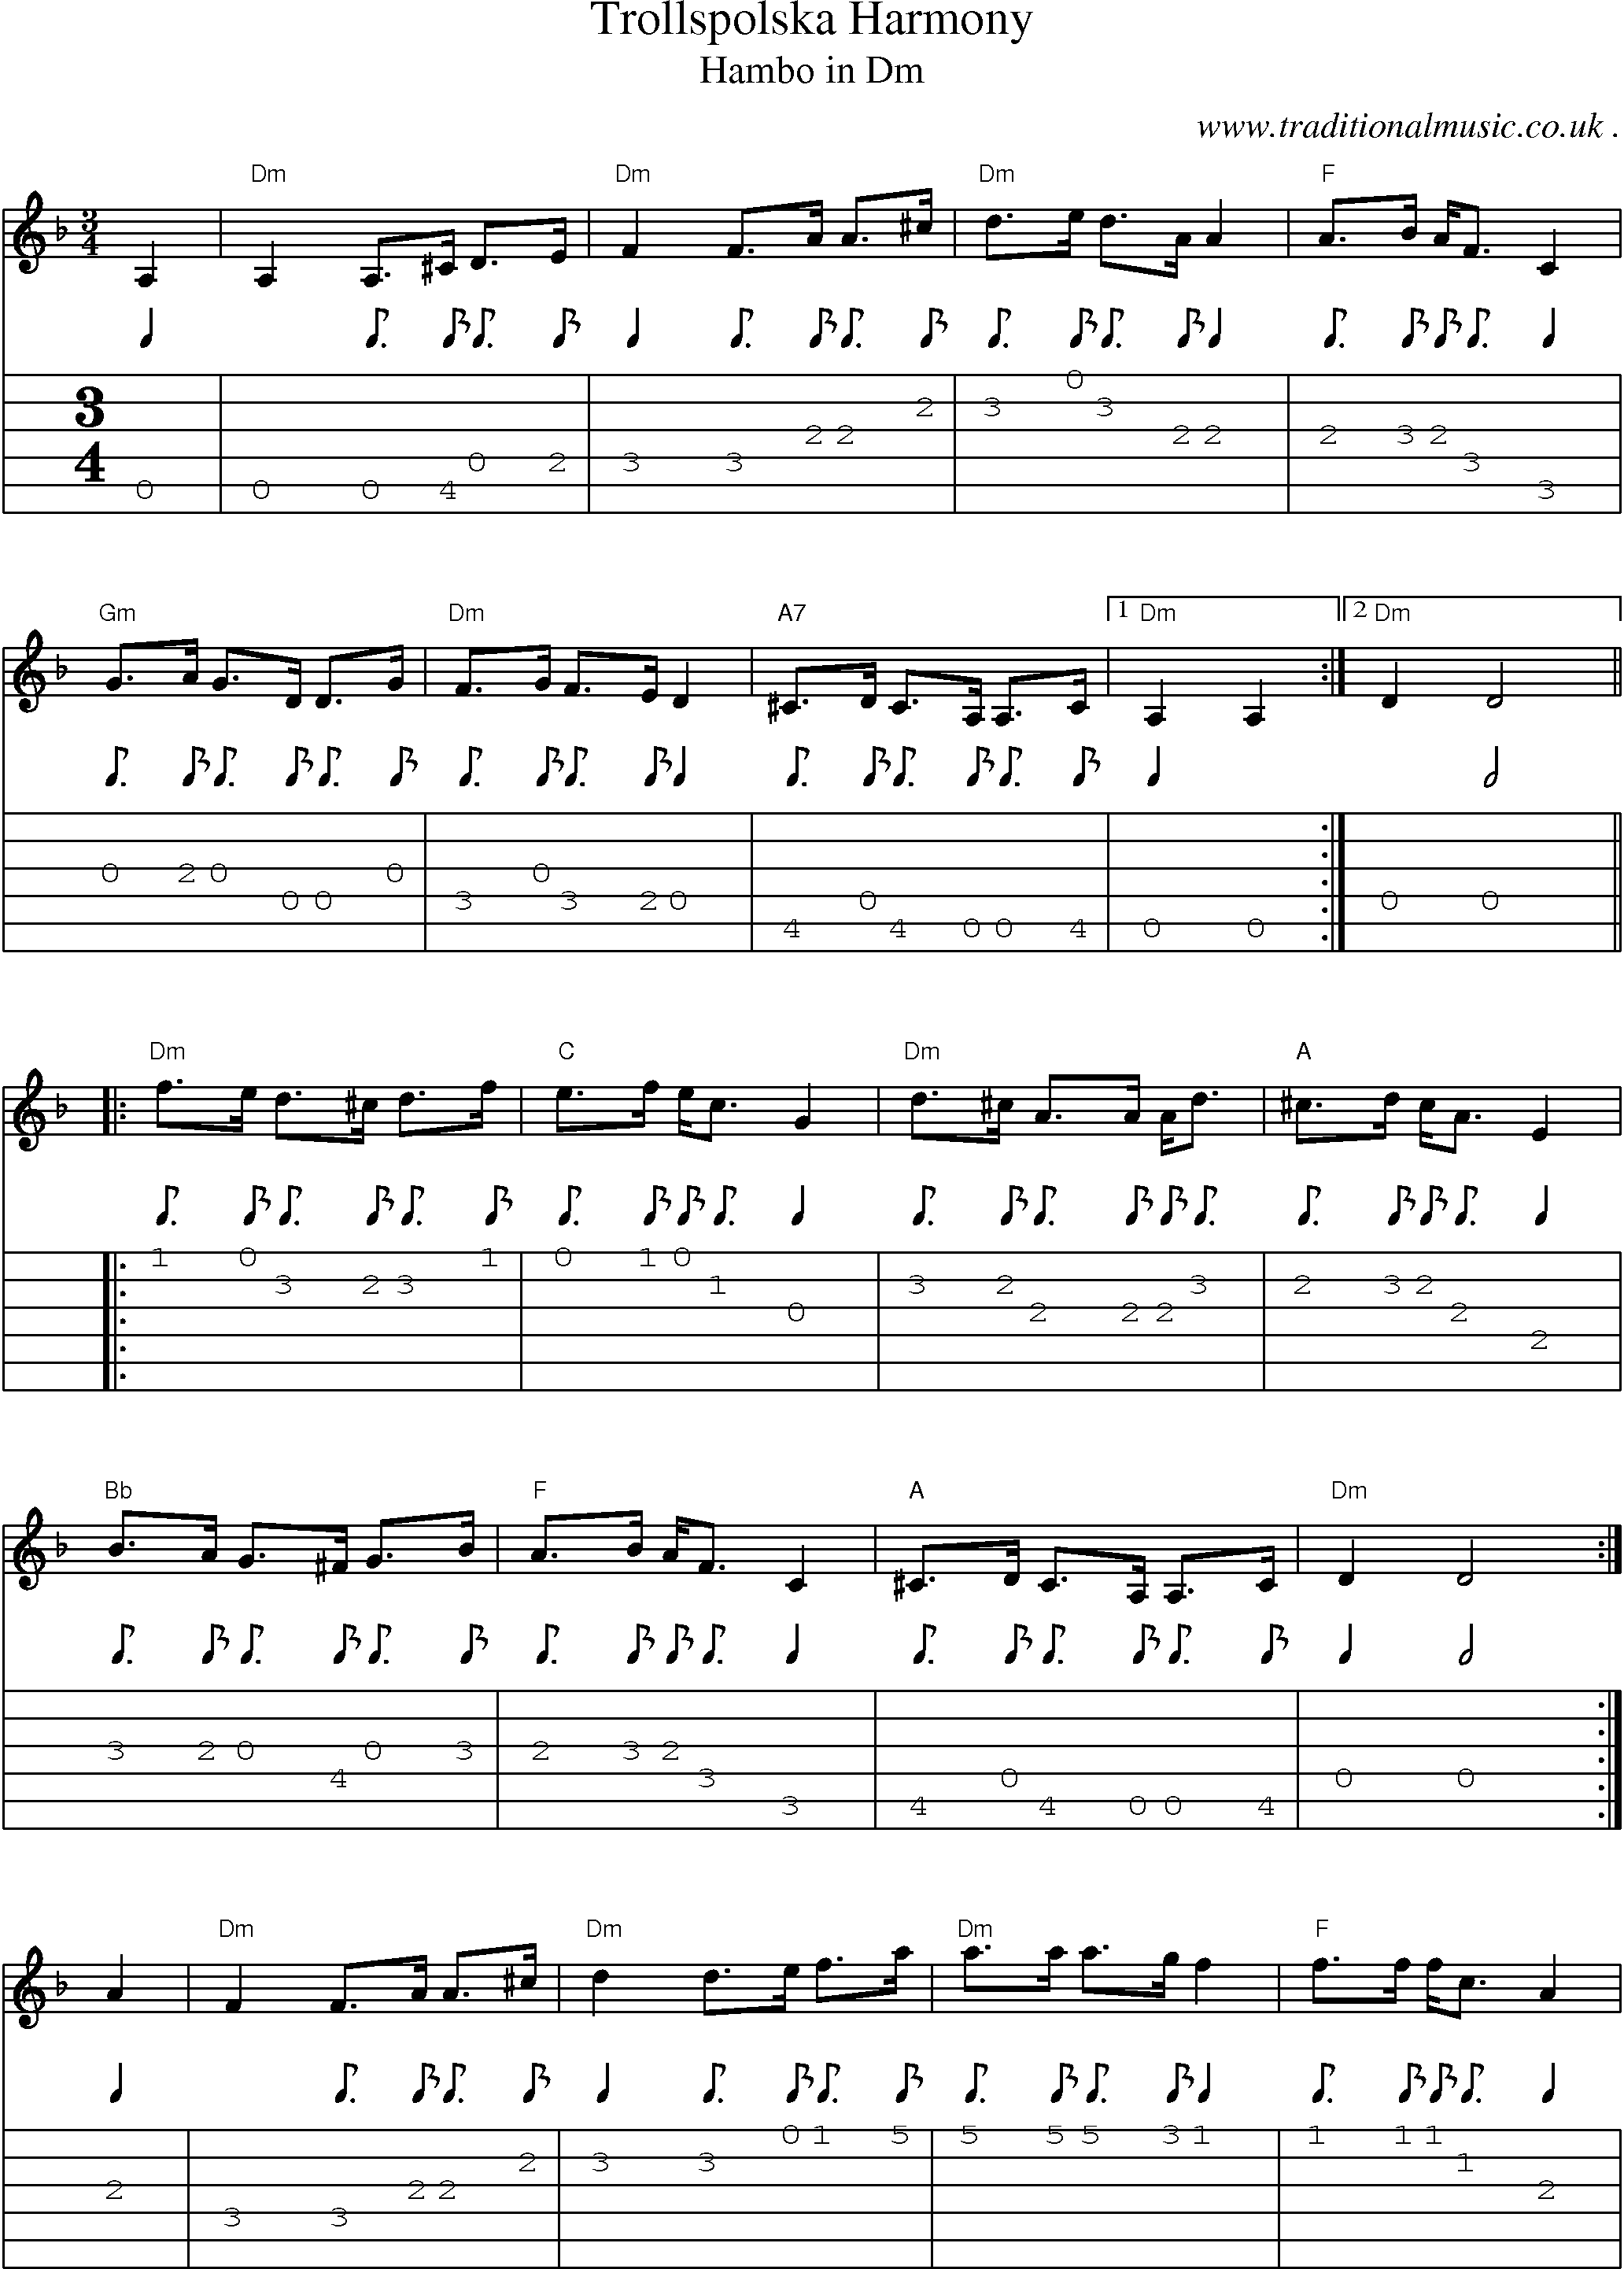 Music Score and Guitar Tabs for Trollspolska Harmony